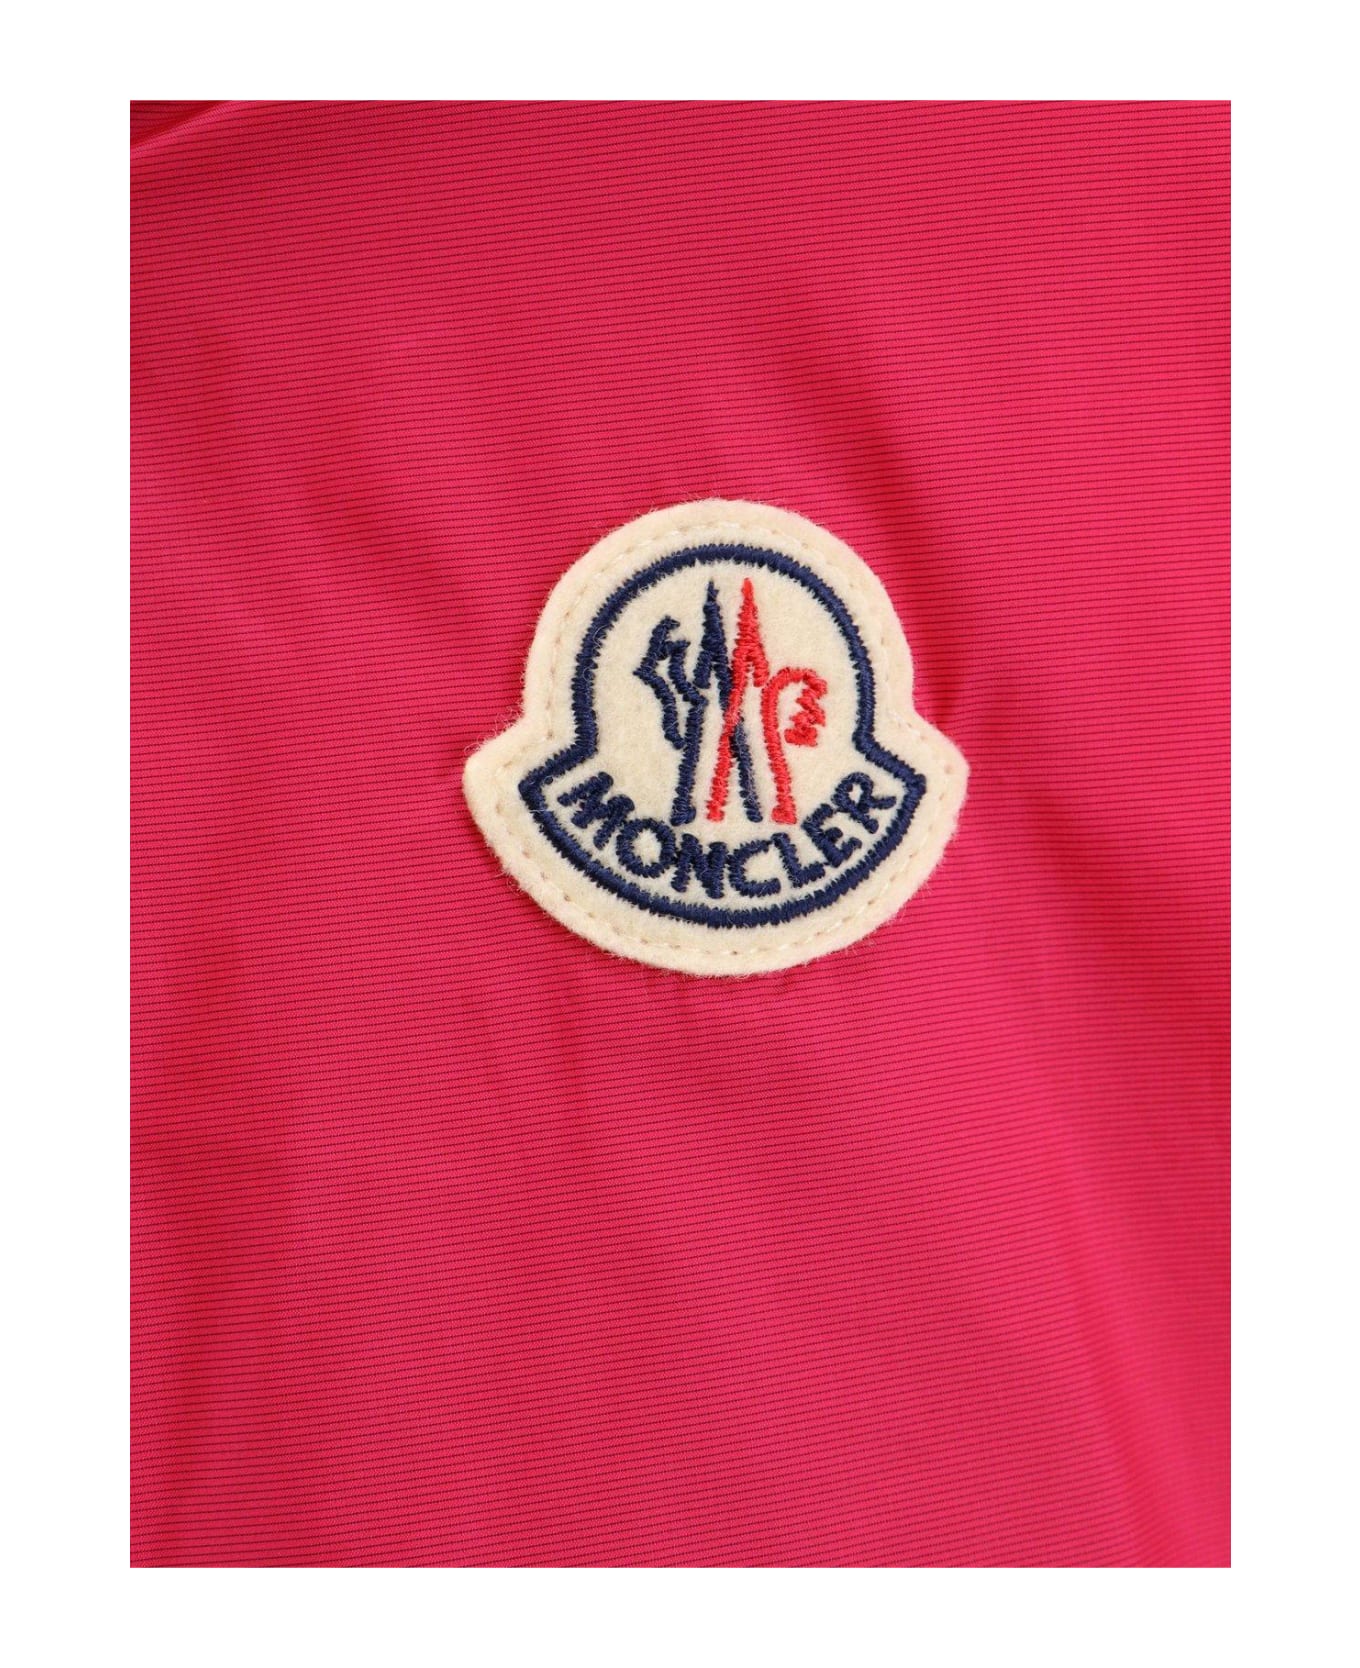 Moncler Filiria Hooded Jacket - Pink ジャケット